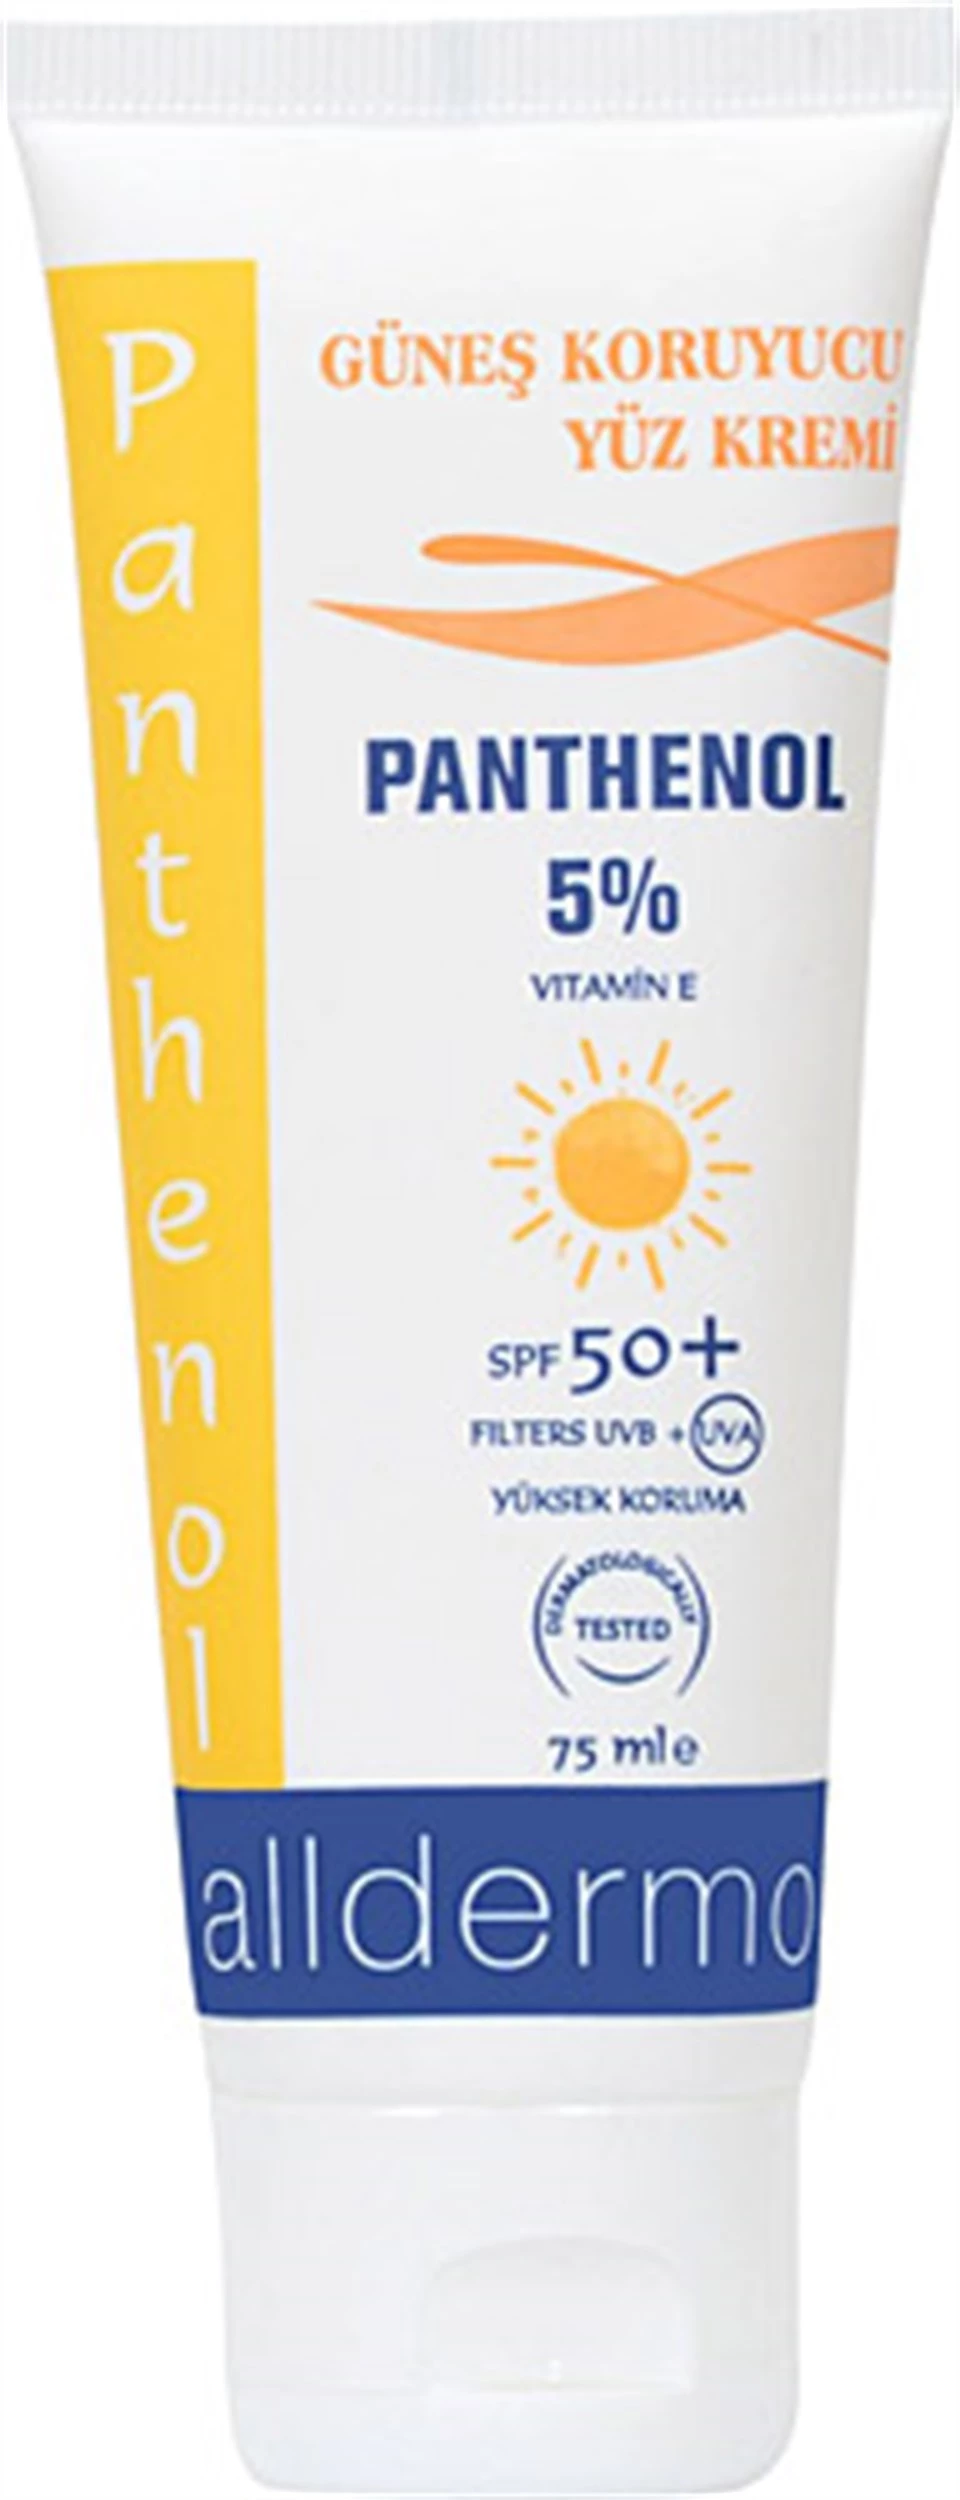 Alldermo Panthenol Güneş Koruyucu Yüz Kremi SPF 50+ 75ml